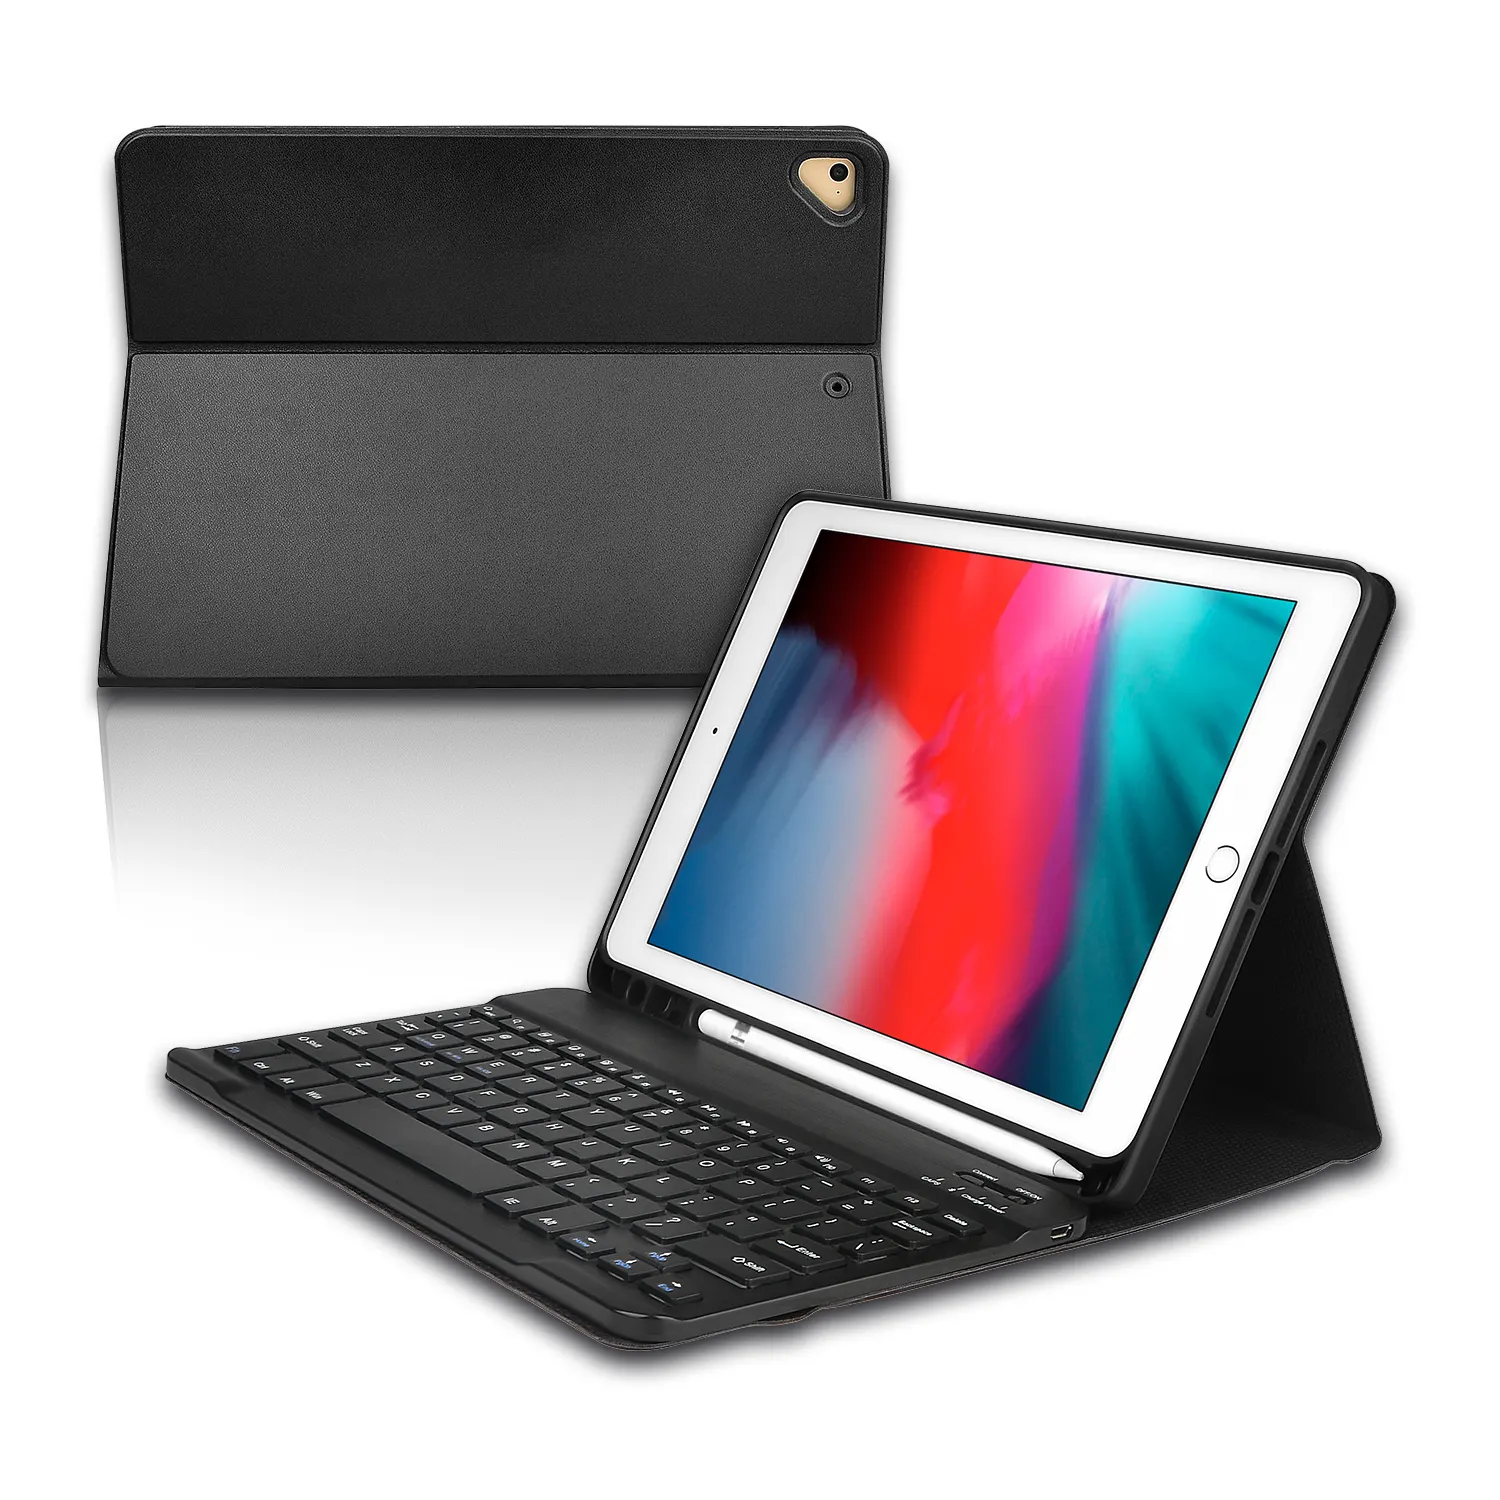 100% qualität garantie drahtlose tastatur fall kunden für ipad tablet tastatur fall 9.7 "10.2" 10.5 "11"